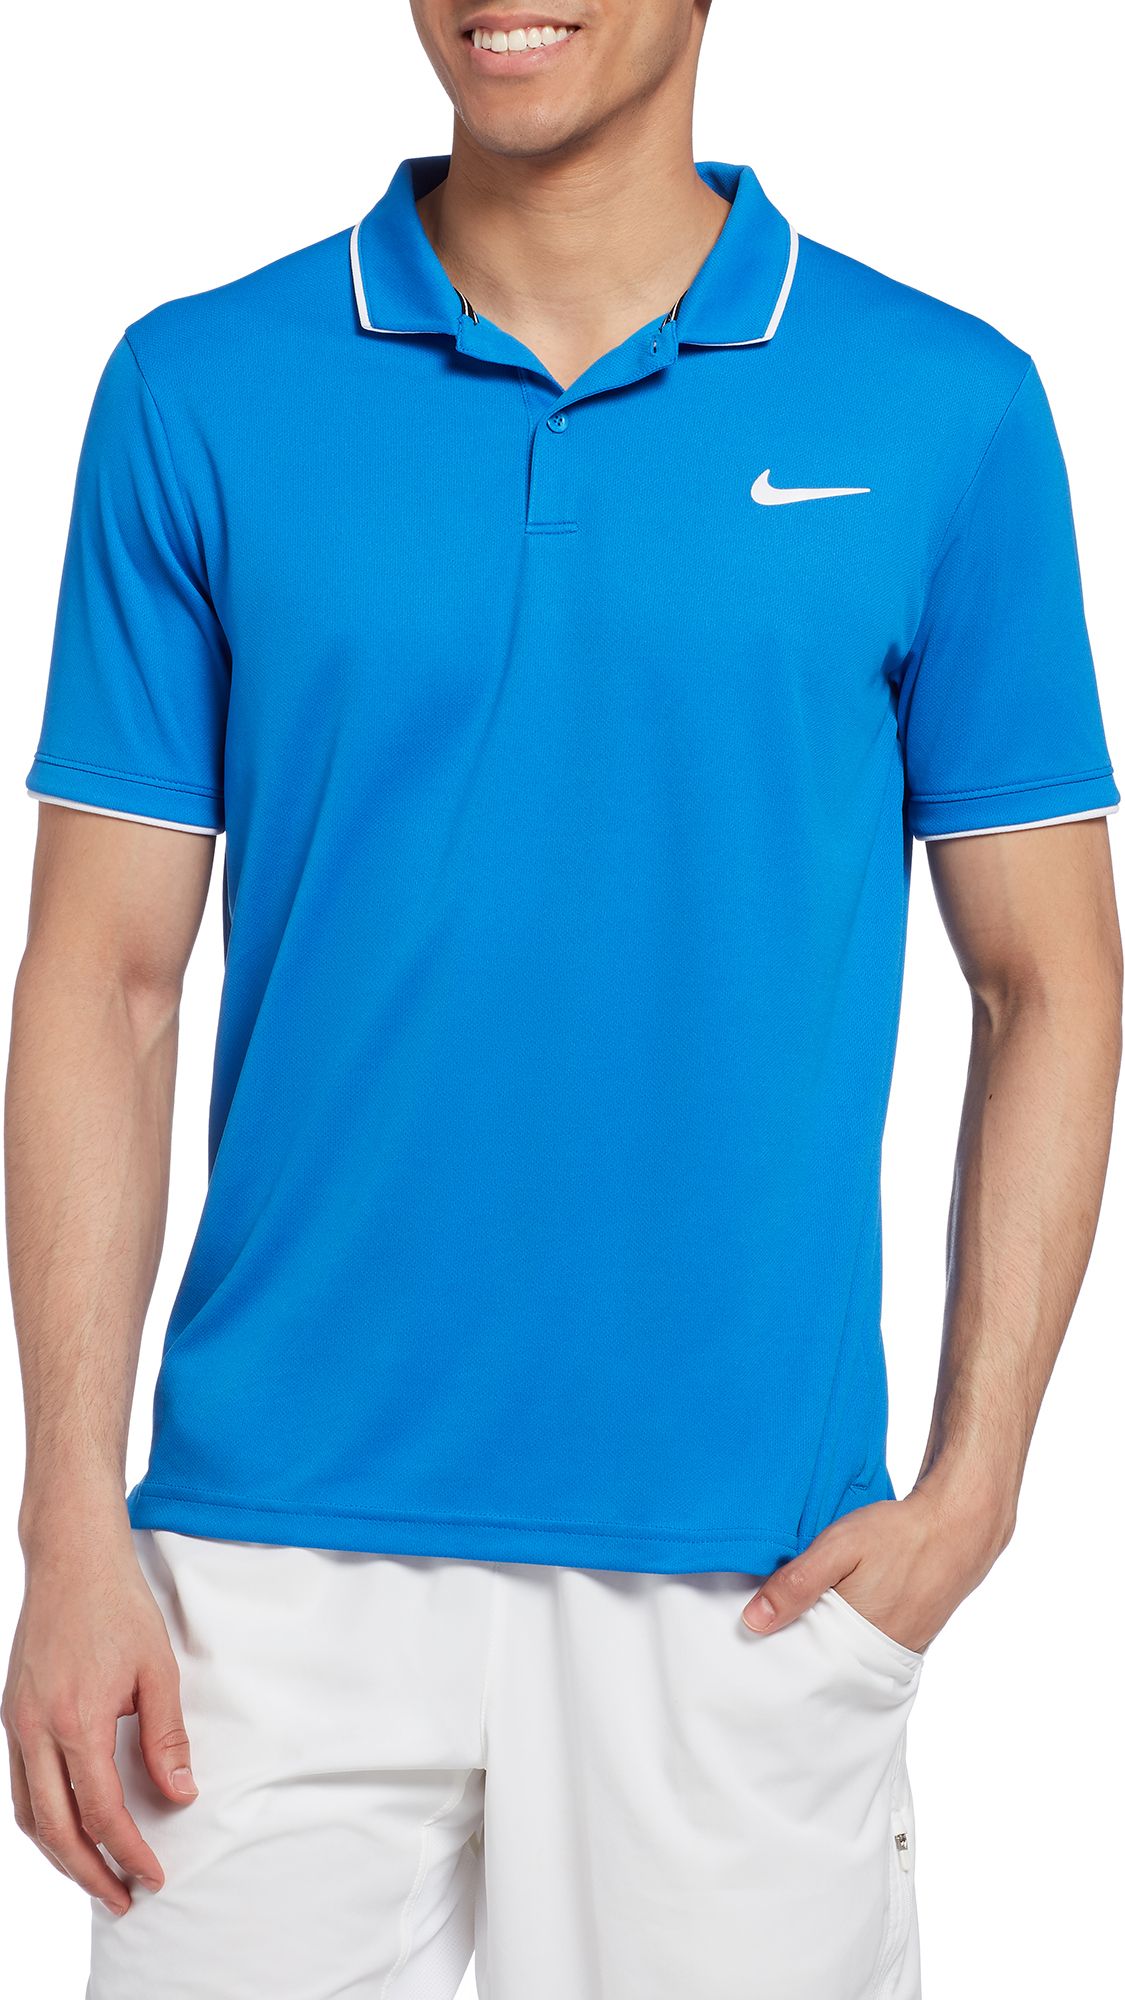 Nike Men's NikeCourt Dri-FIT Tennis Polo - .97